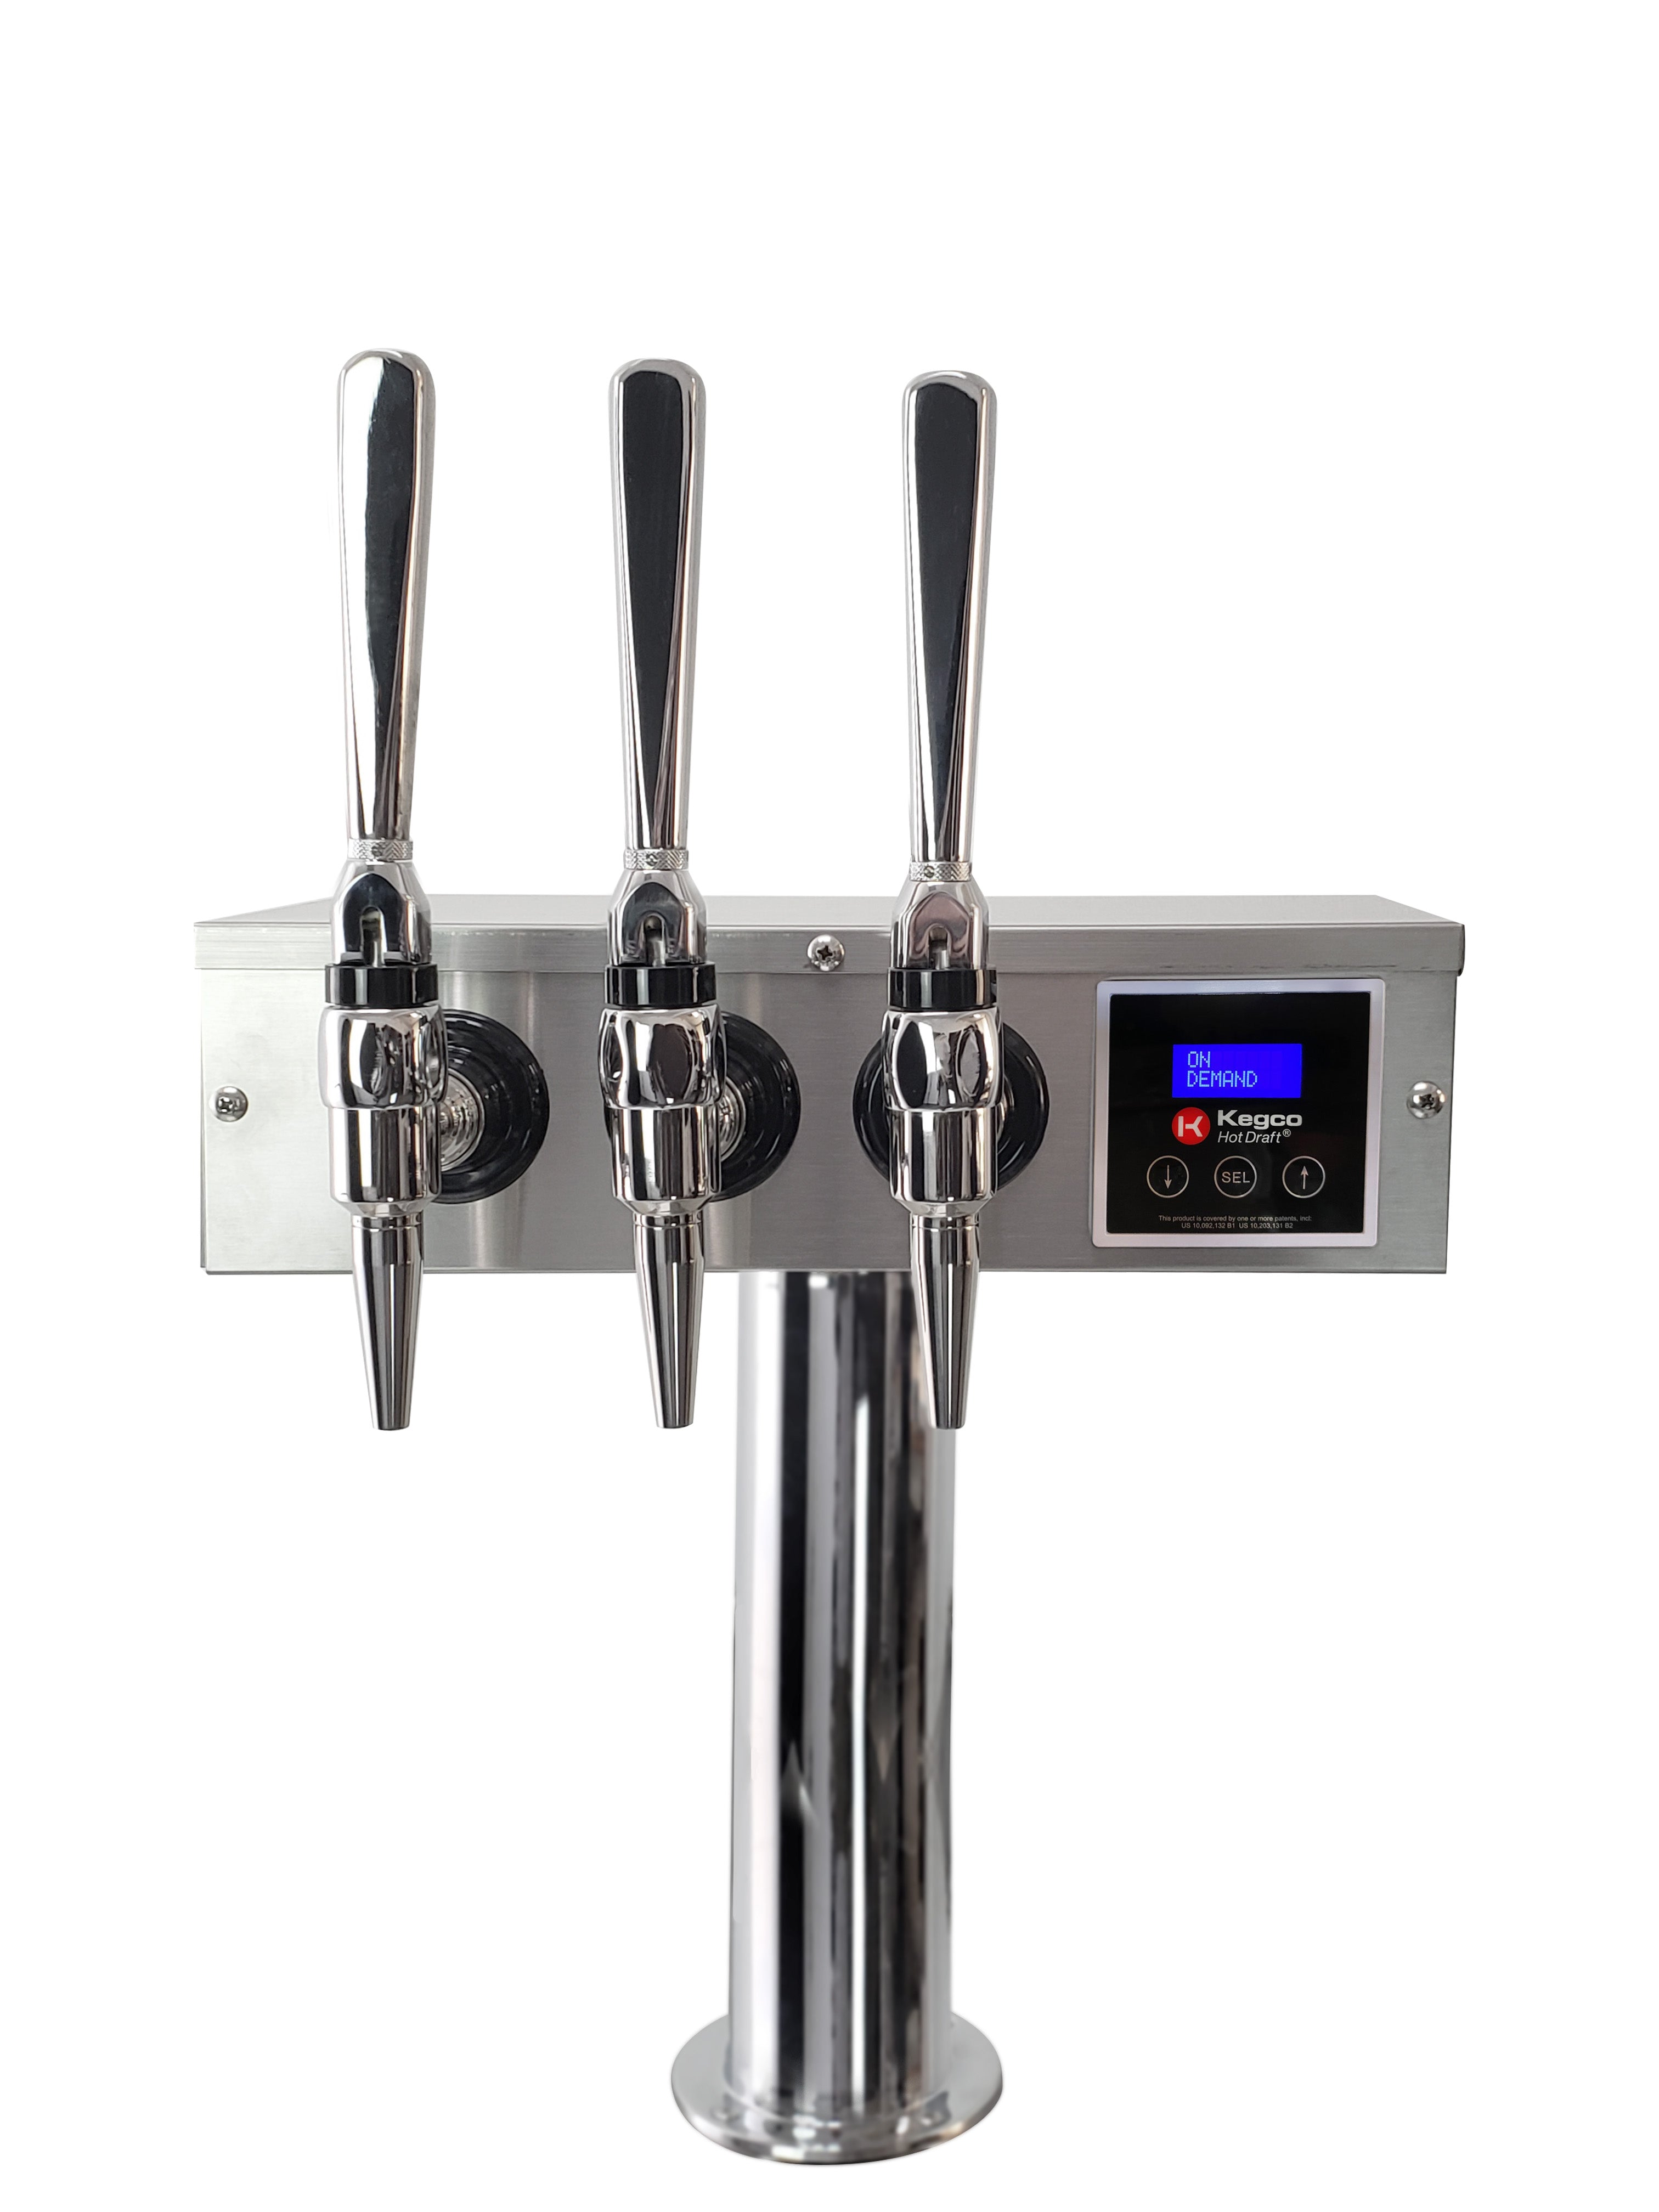 Kegco XCK-HDT-3B ® Triple Faucet Commercial Kegerator Hot Draft Tap Coffee Keg Dispenser - Black